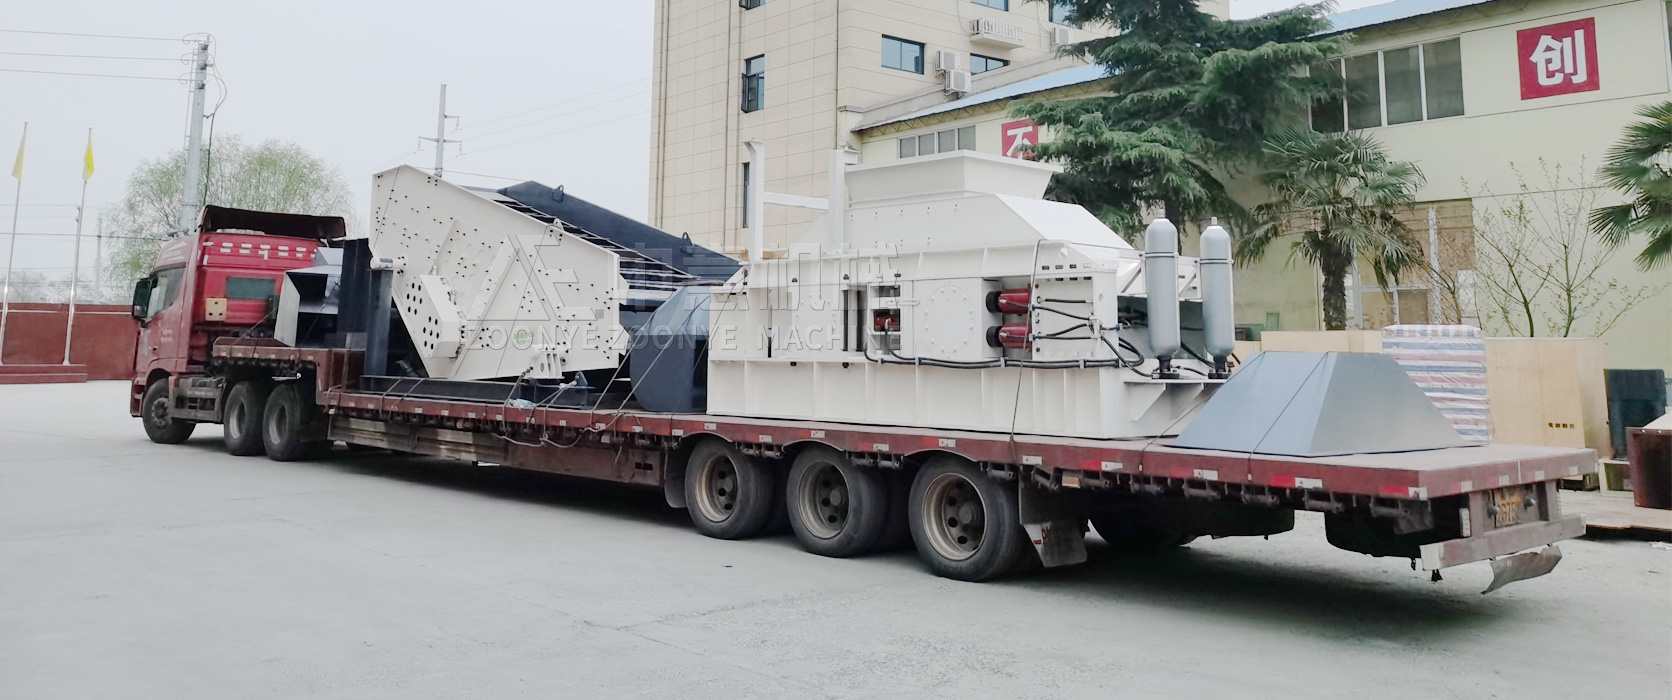 浙江温州日处理3000吨建筑装修垃圾分拣生产线发货